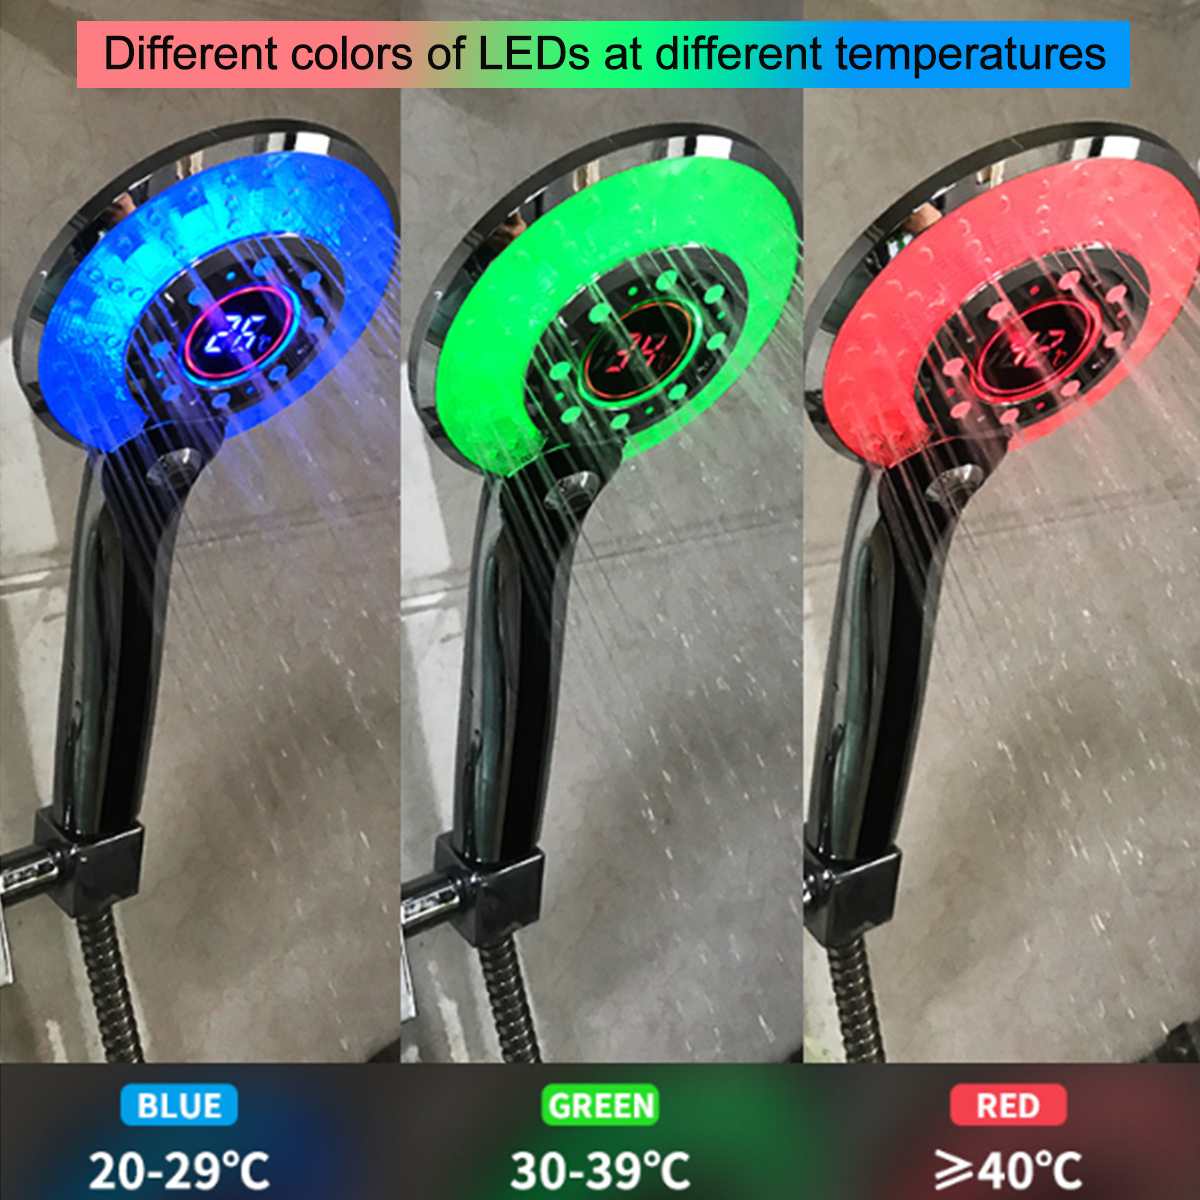 3 Color LED Shower Head - Sdoutfit